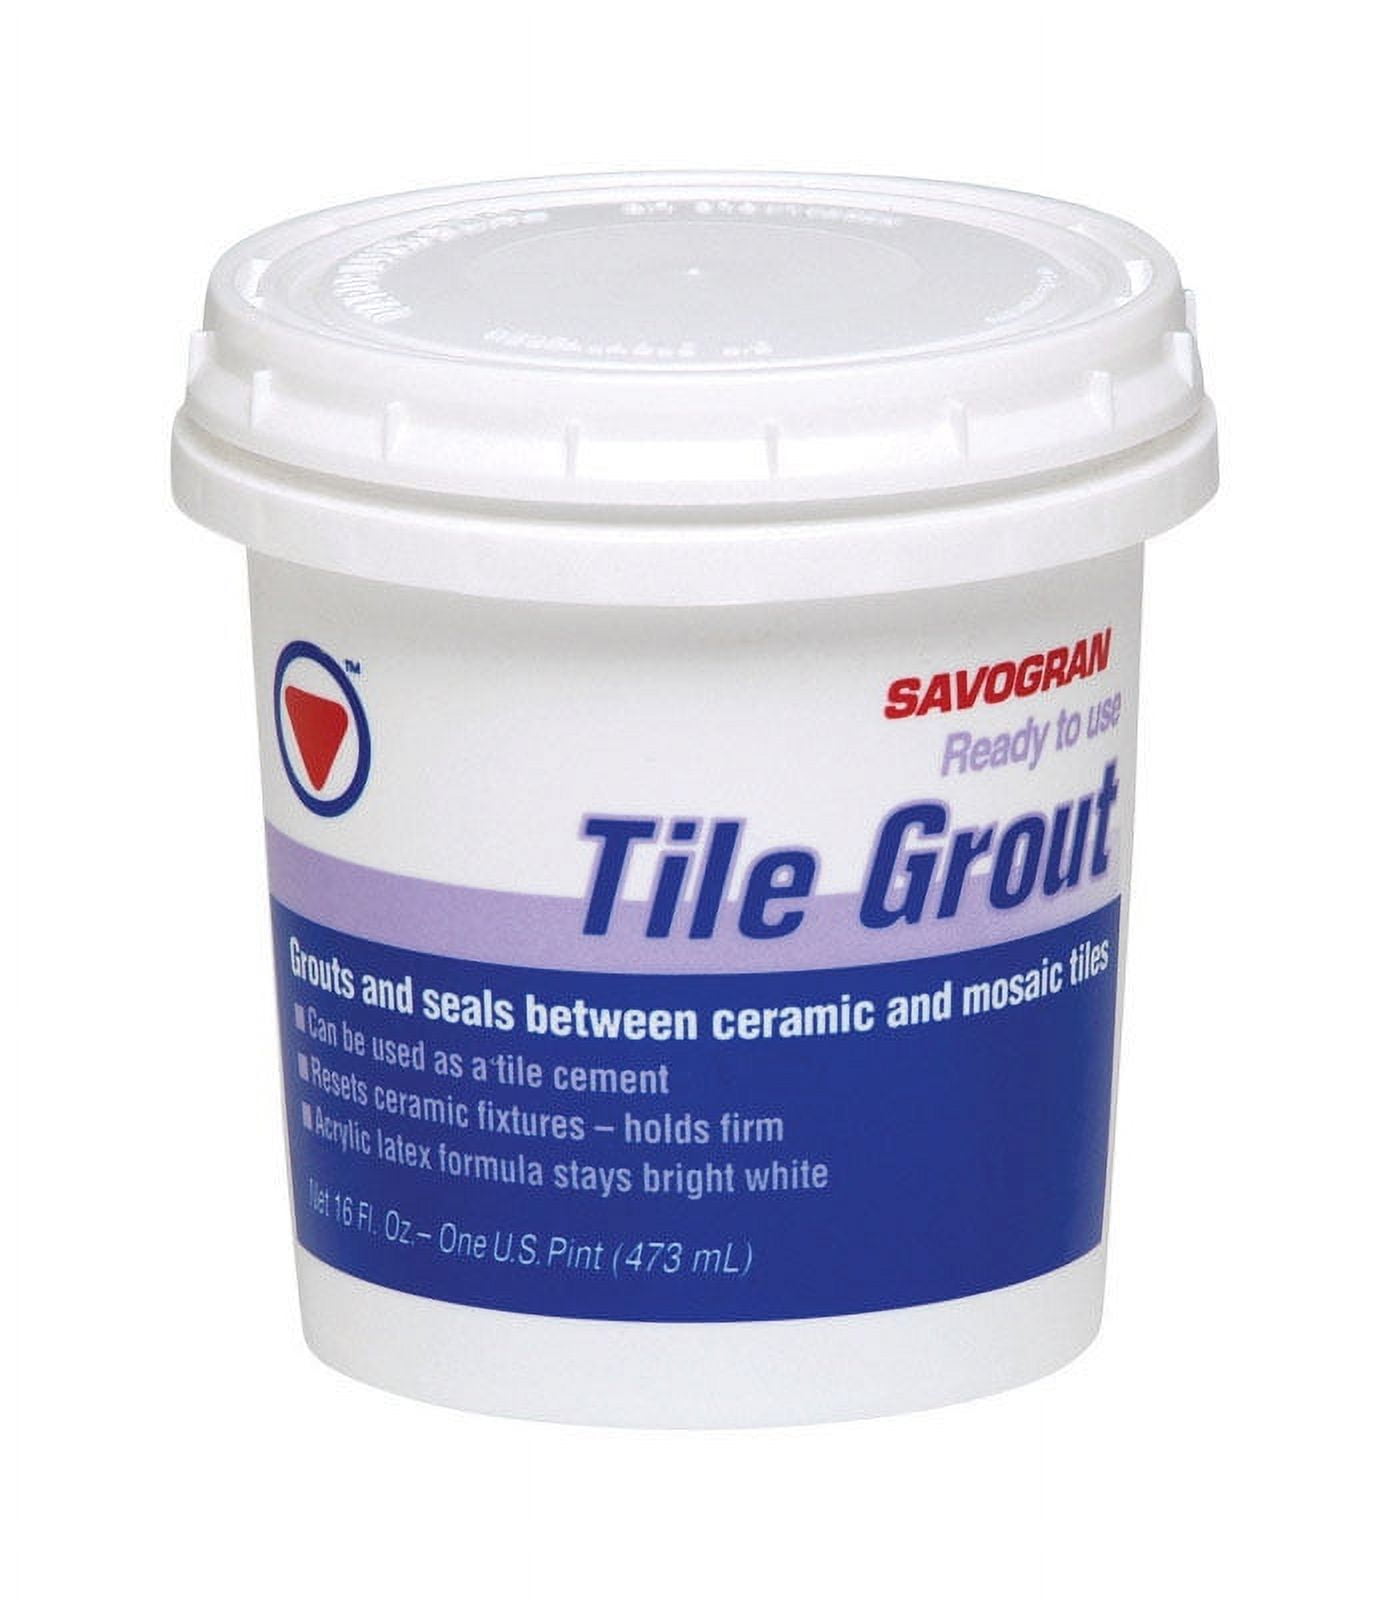 Homax 3157 Tough As Tile 32 oz. White Tub Sink and Tile Spray Epoxy